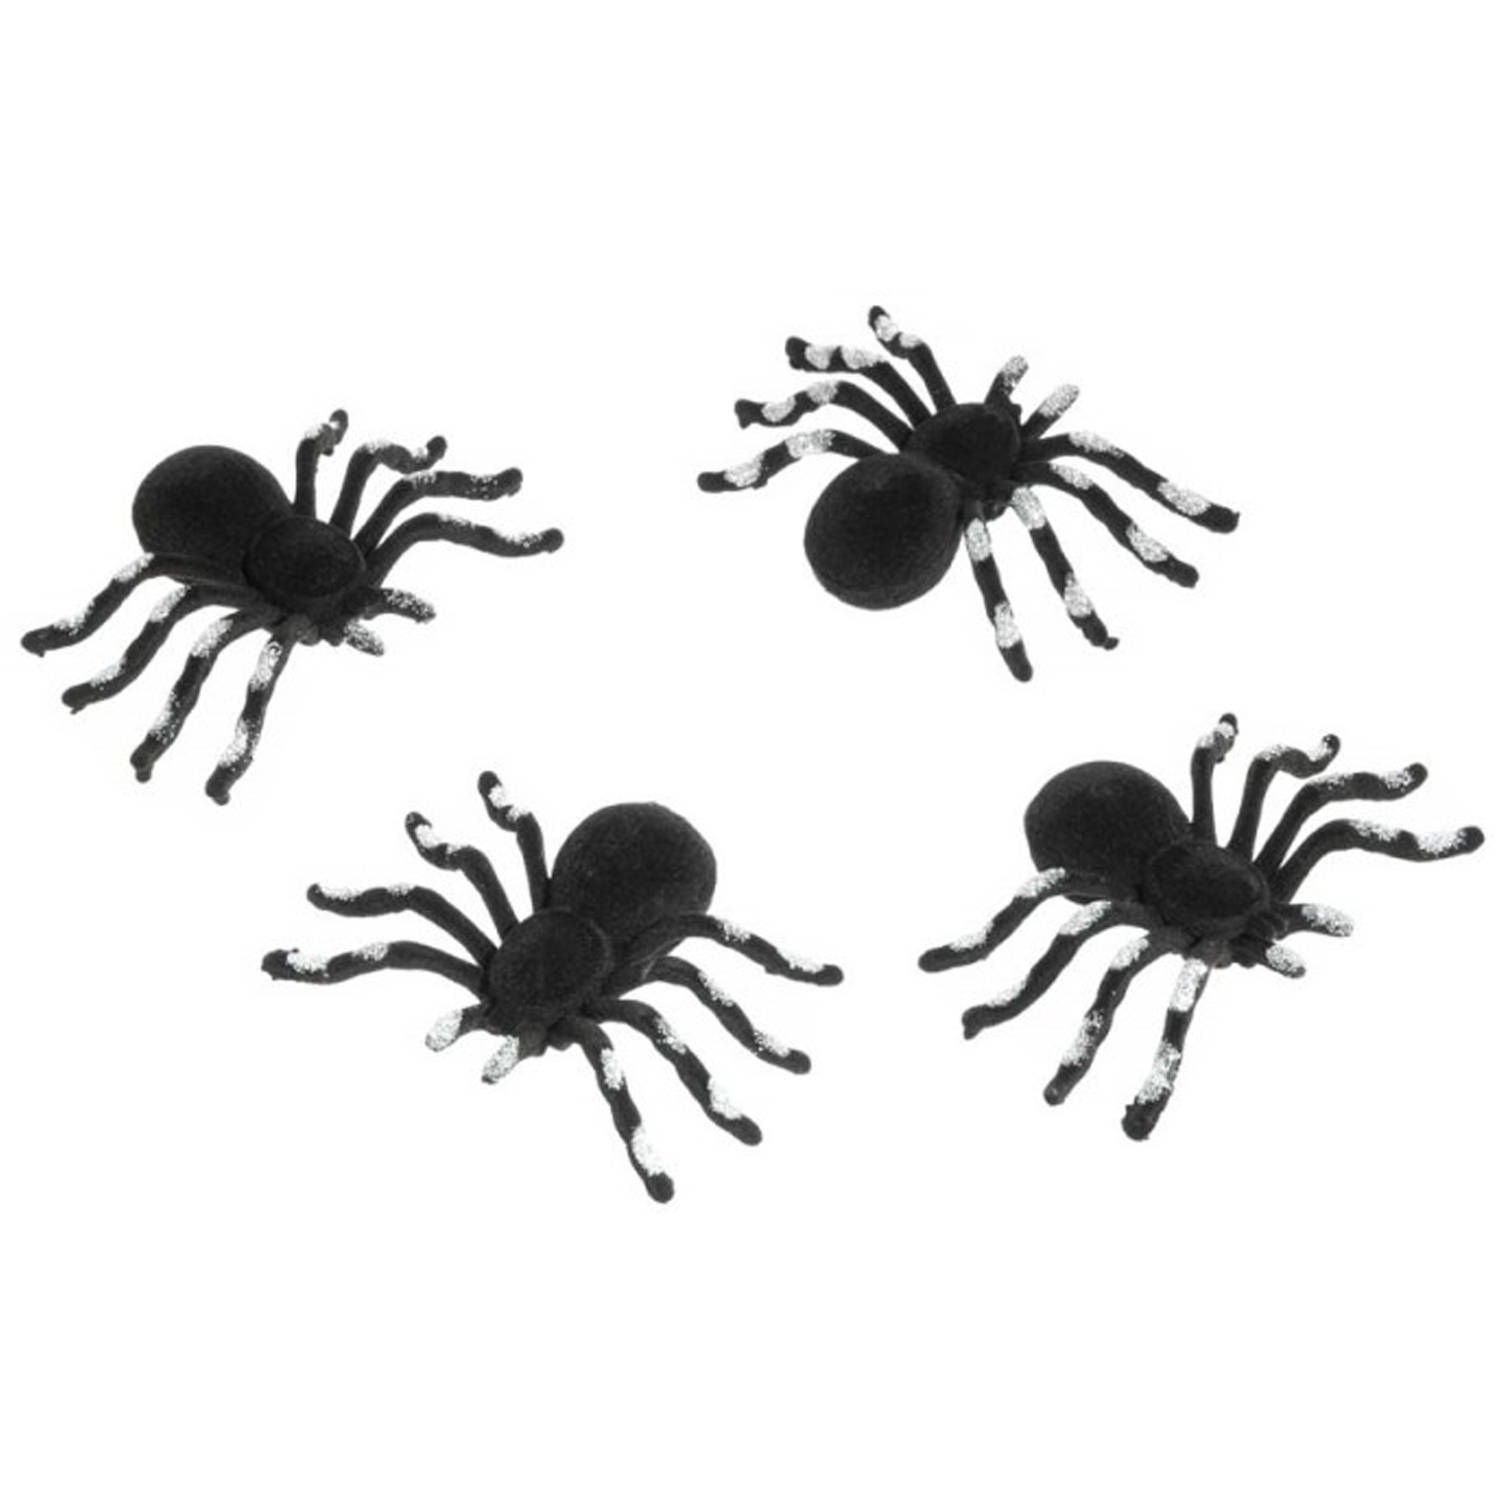 Chaks nep spinnen 10 cm - zwart/zilver - 4x stuks - velvet/fluweel - Horror/griezel thema decoratie